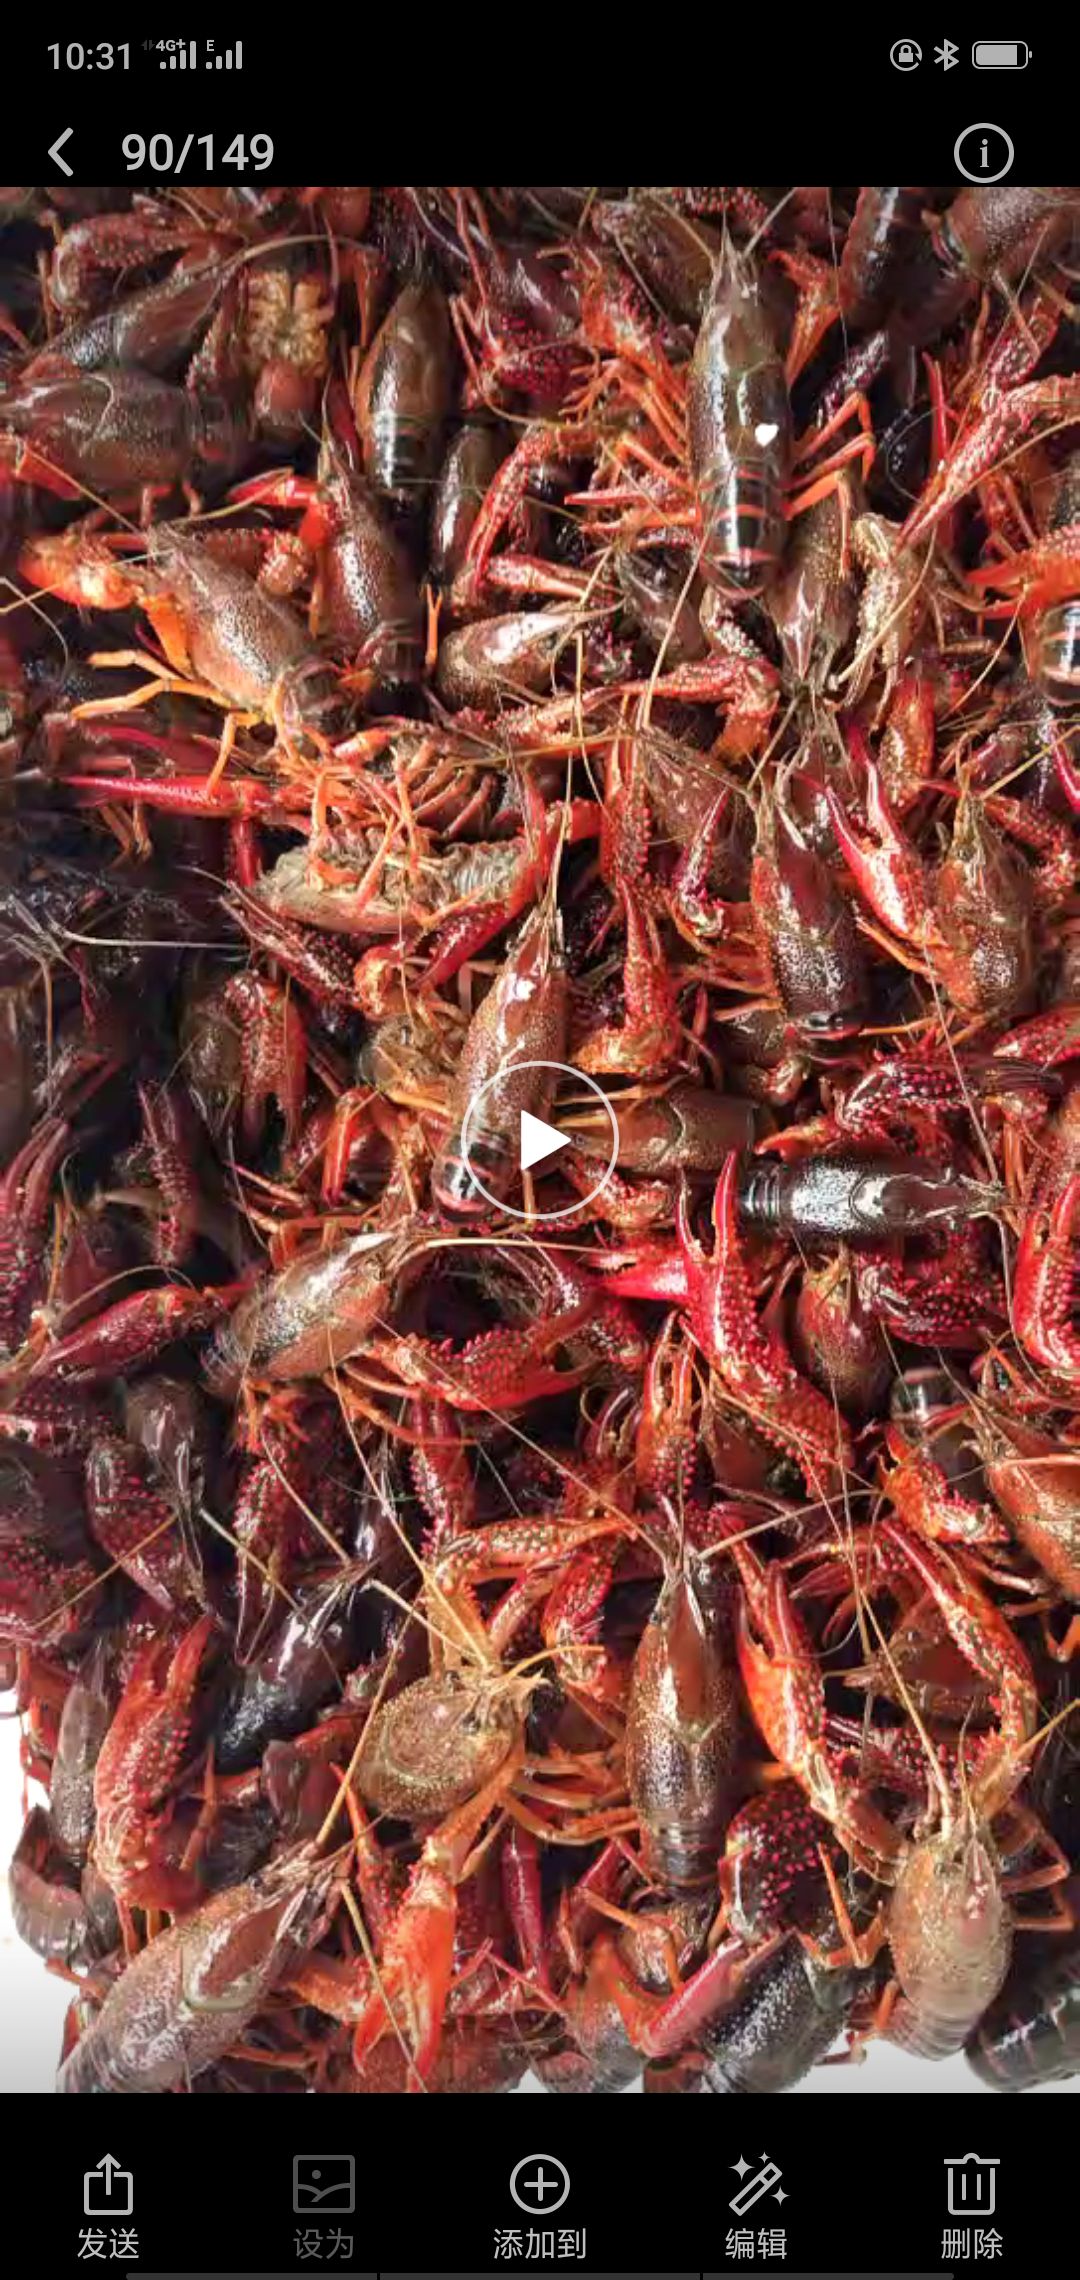 克氏原螯虾-鄱阳湖水产品-图片